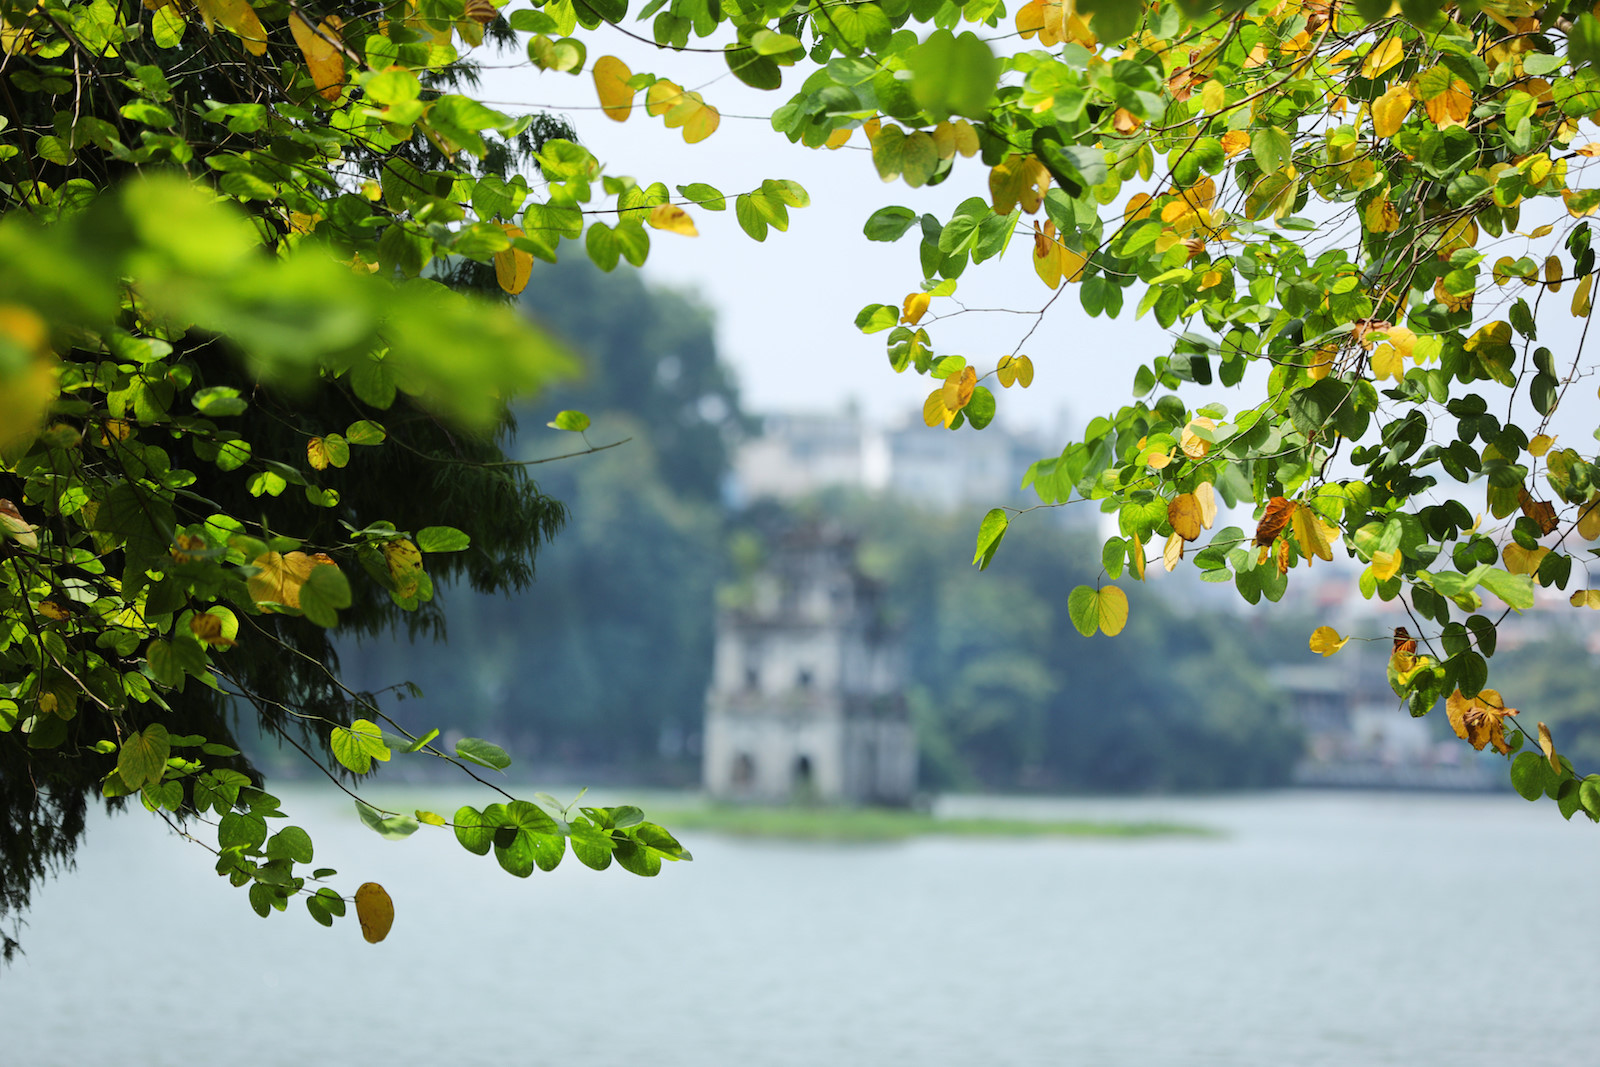 Hình ảnh hồ Gươm mùa thu Hà Nội